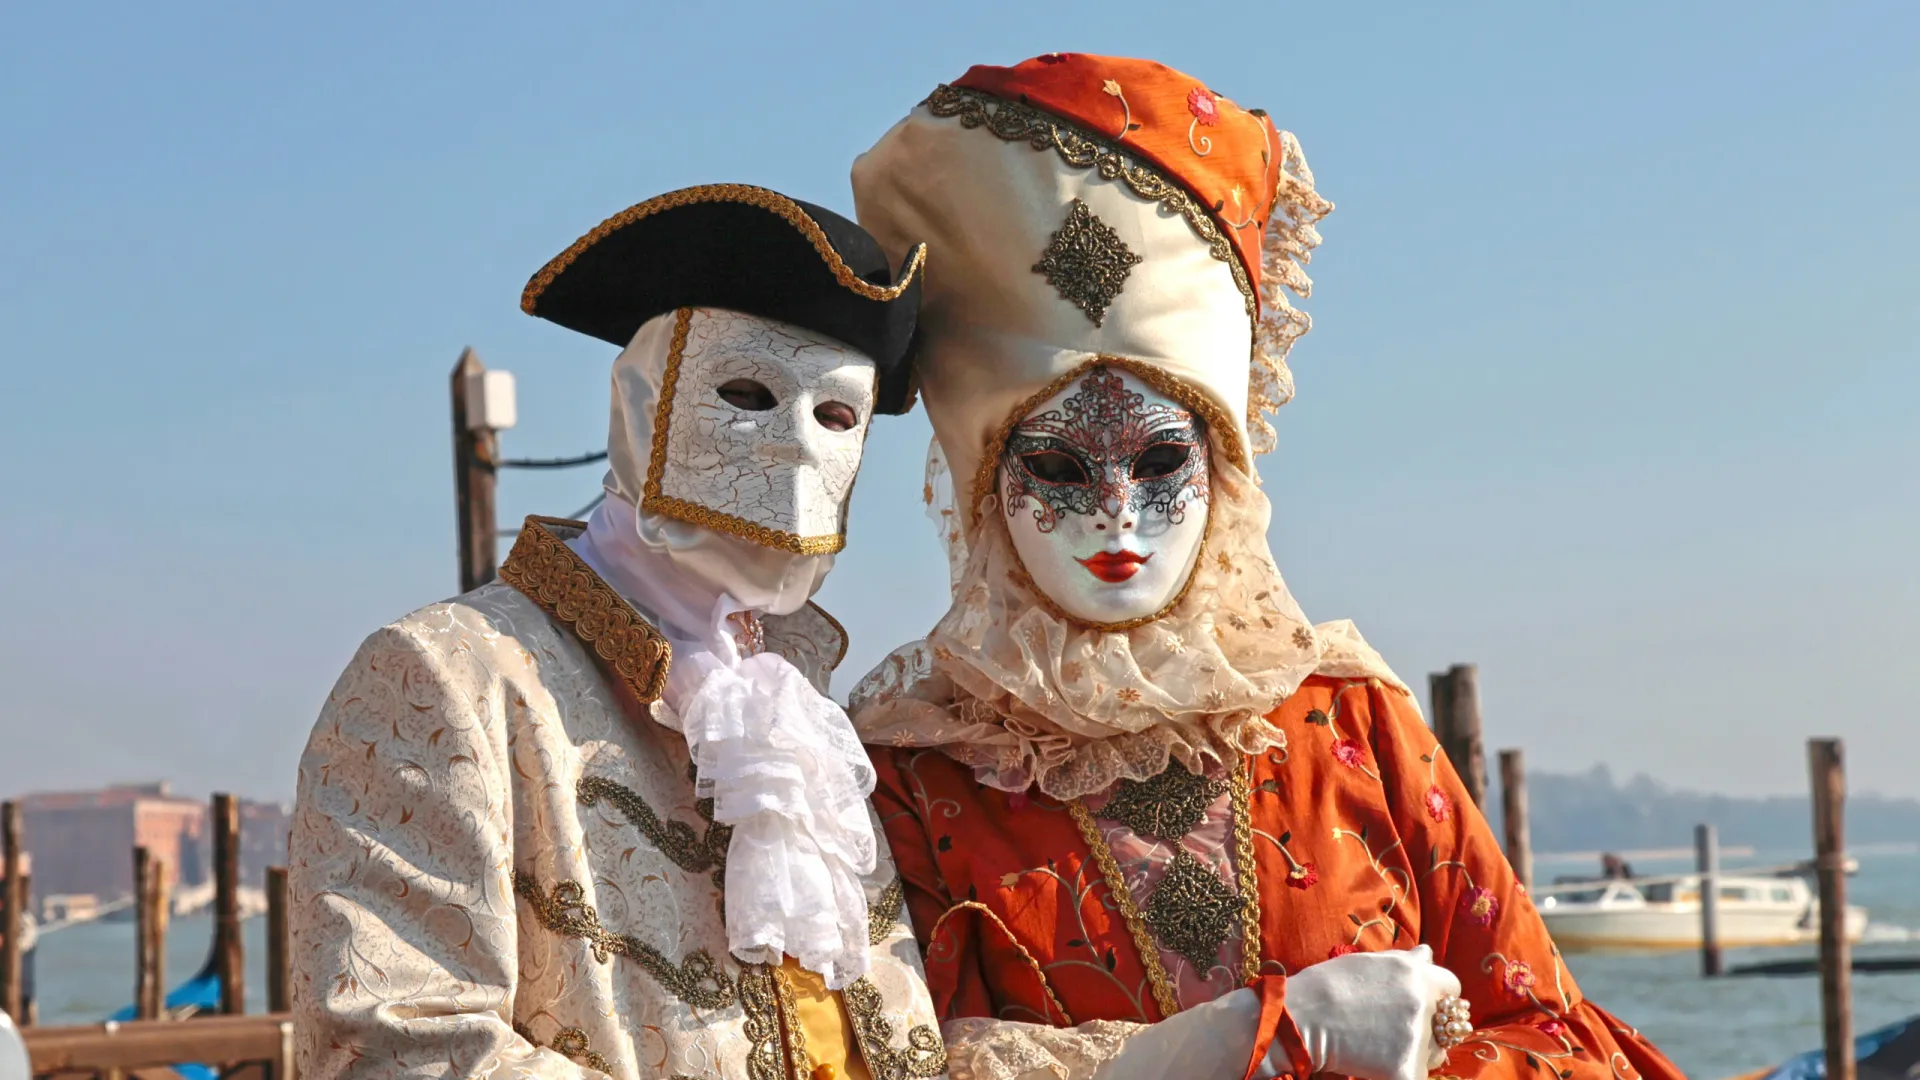 Кавалер и дама в масках баута и мута на карнавале в Венеции. Фото: InnaFelker / Shutterstock / Fotodom